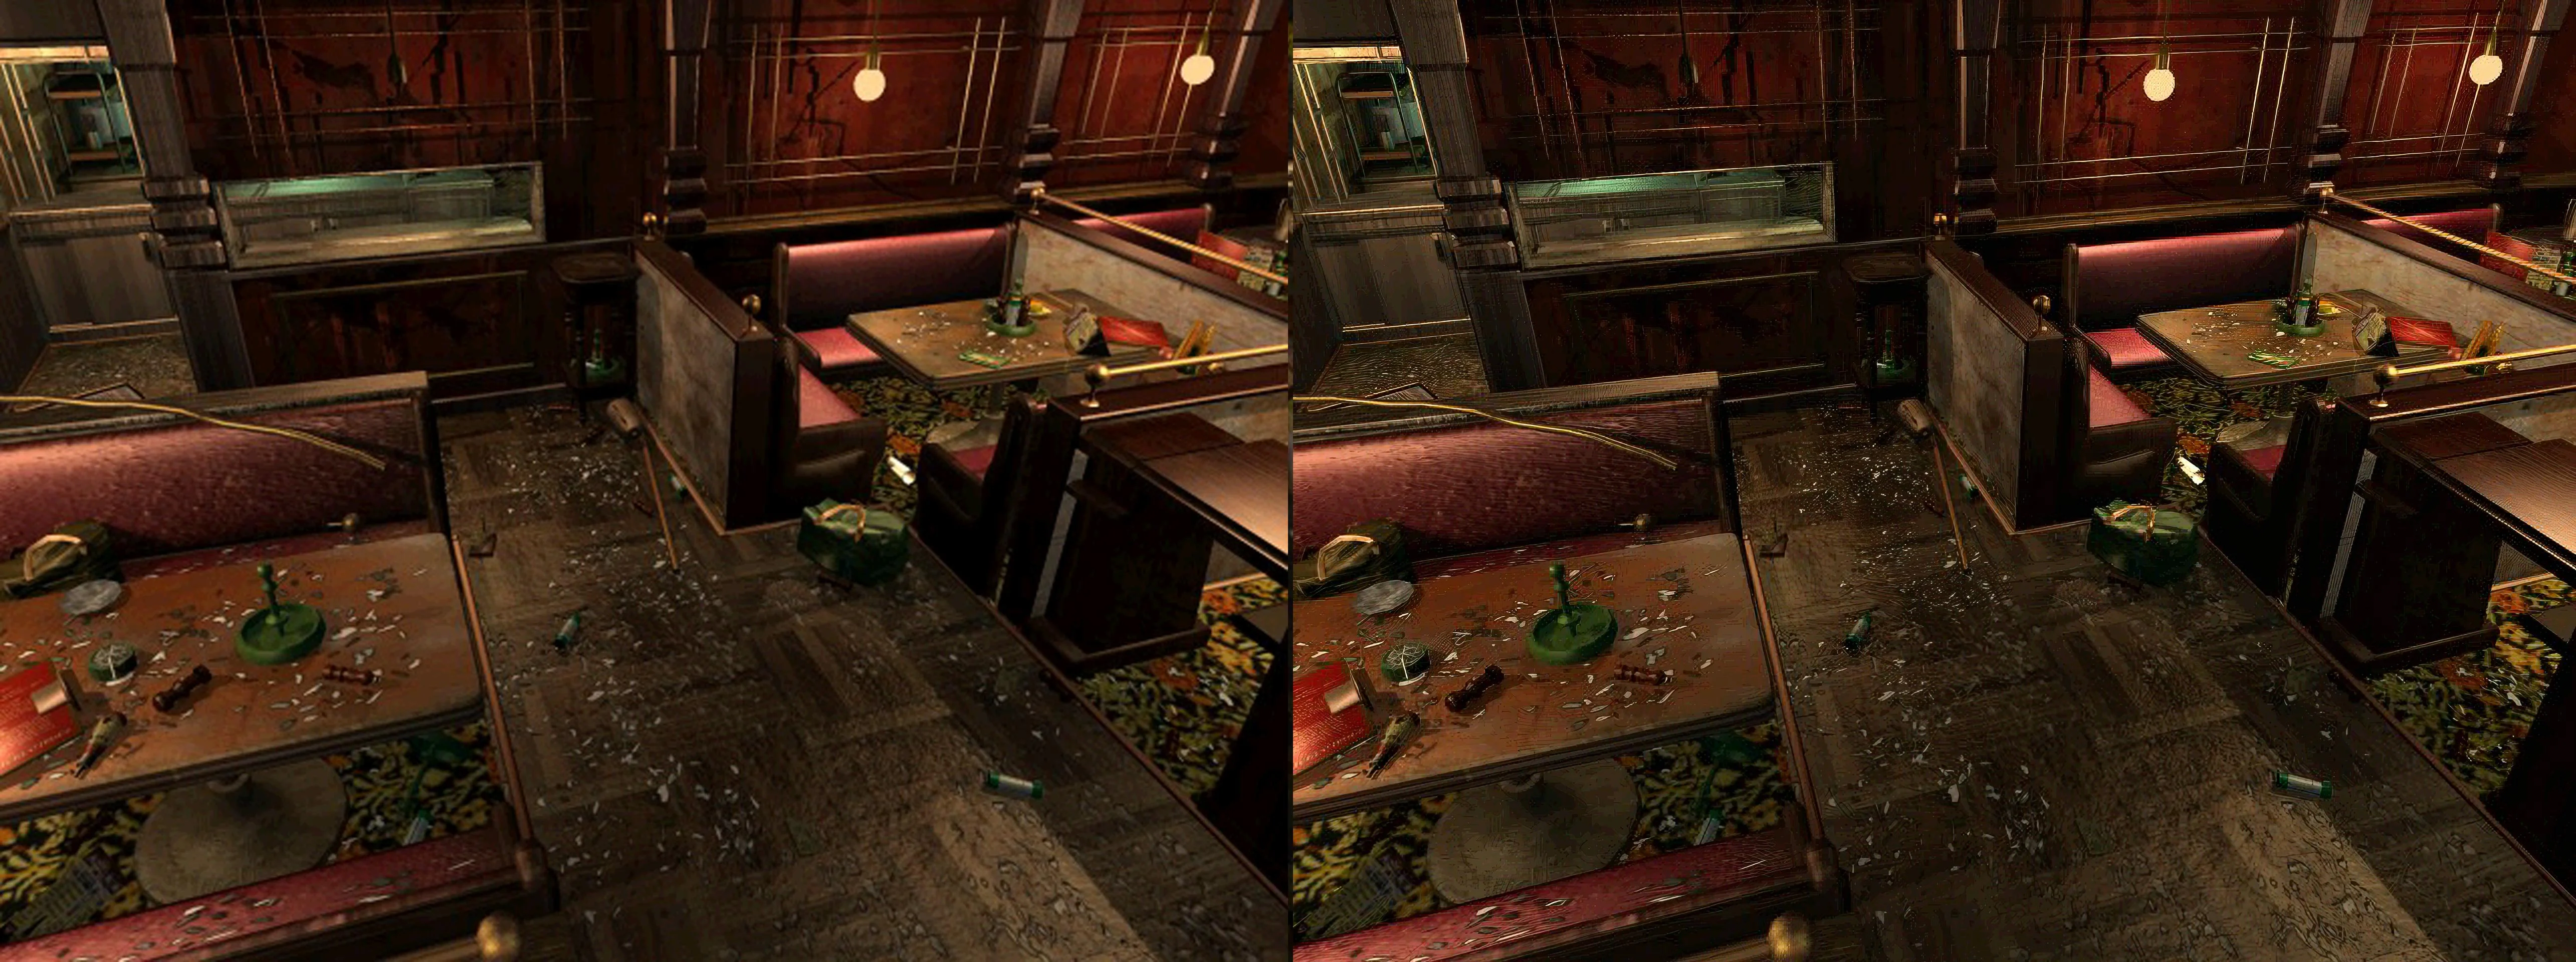 Энтузиаст с помощью нейросетей сделал задние фоны в Resident Evil 3: Nemesis еще красивее - фото 4